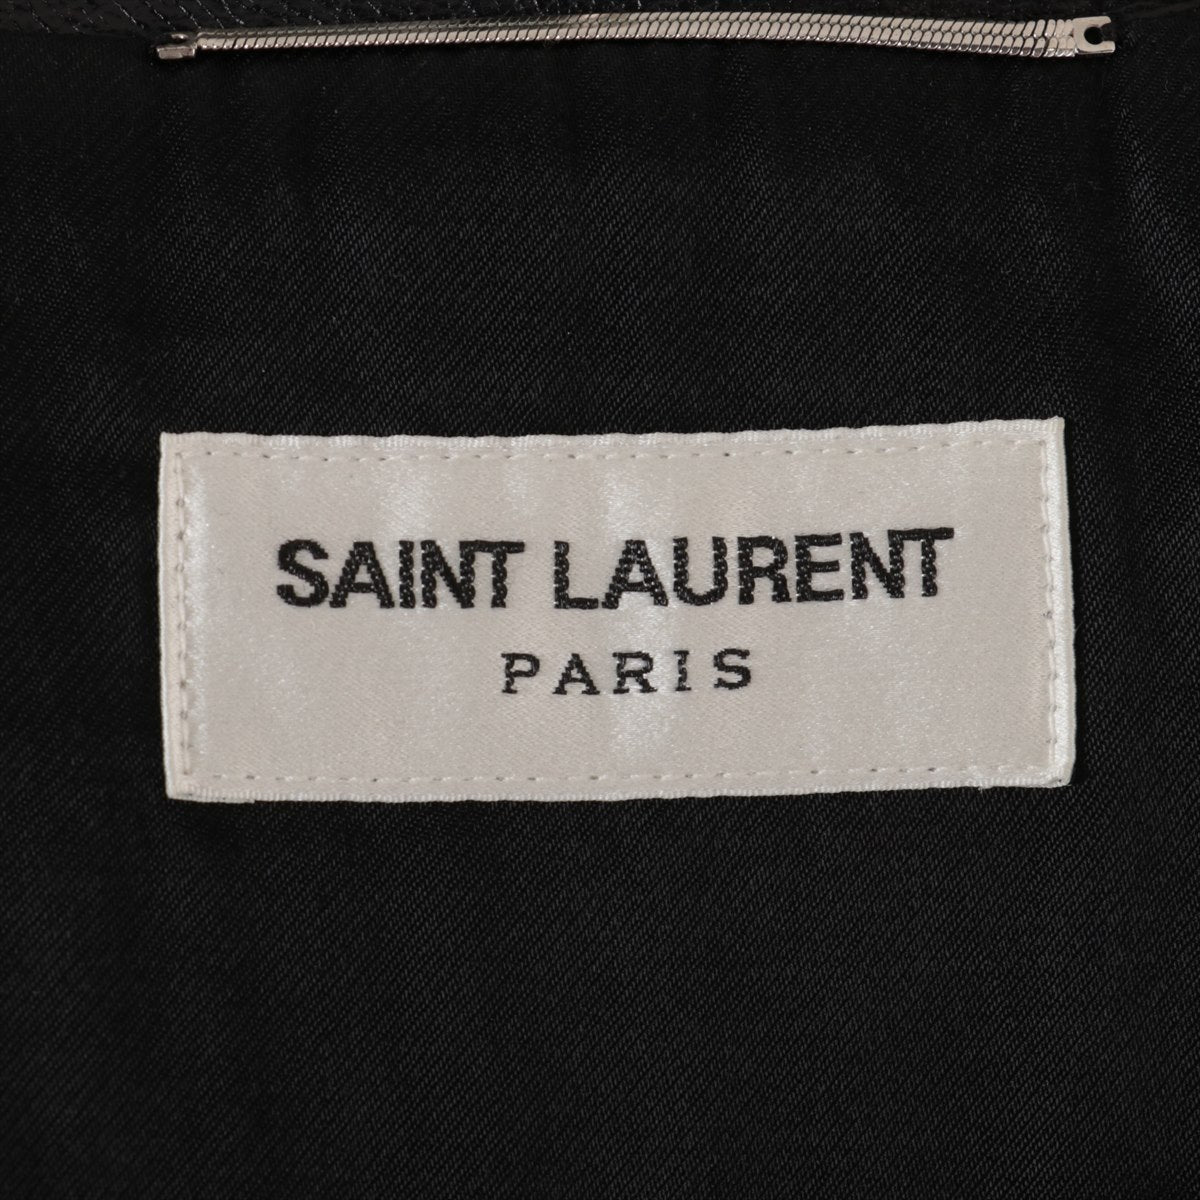 Saint Laurent Paris 20 years calf Leather jacket 48 Men's Black  484284